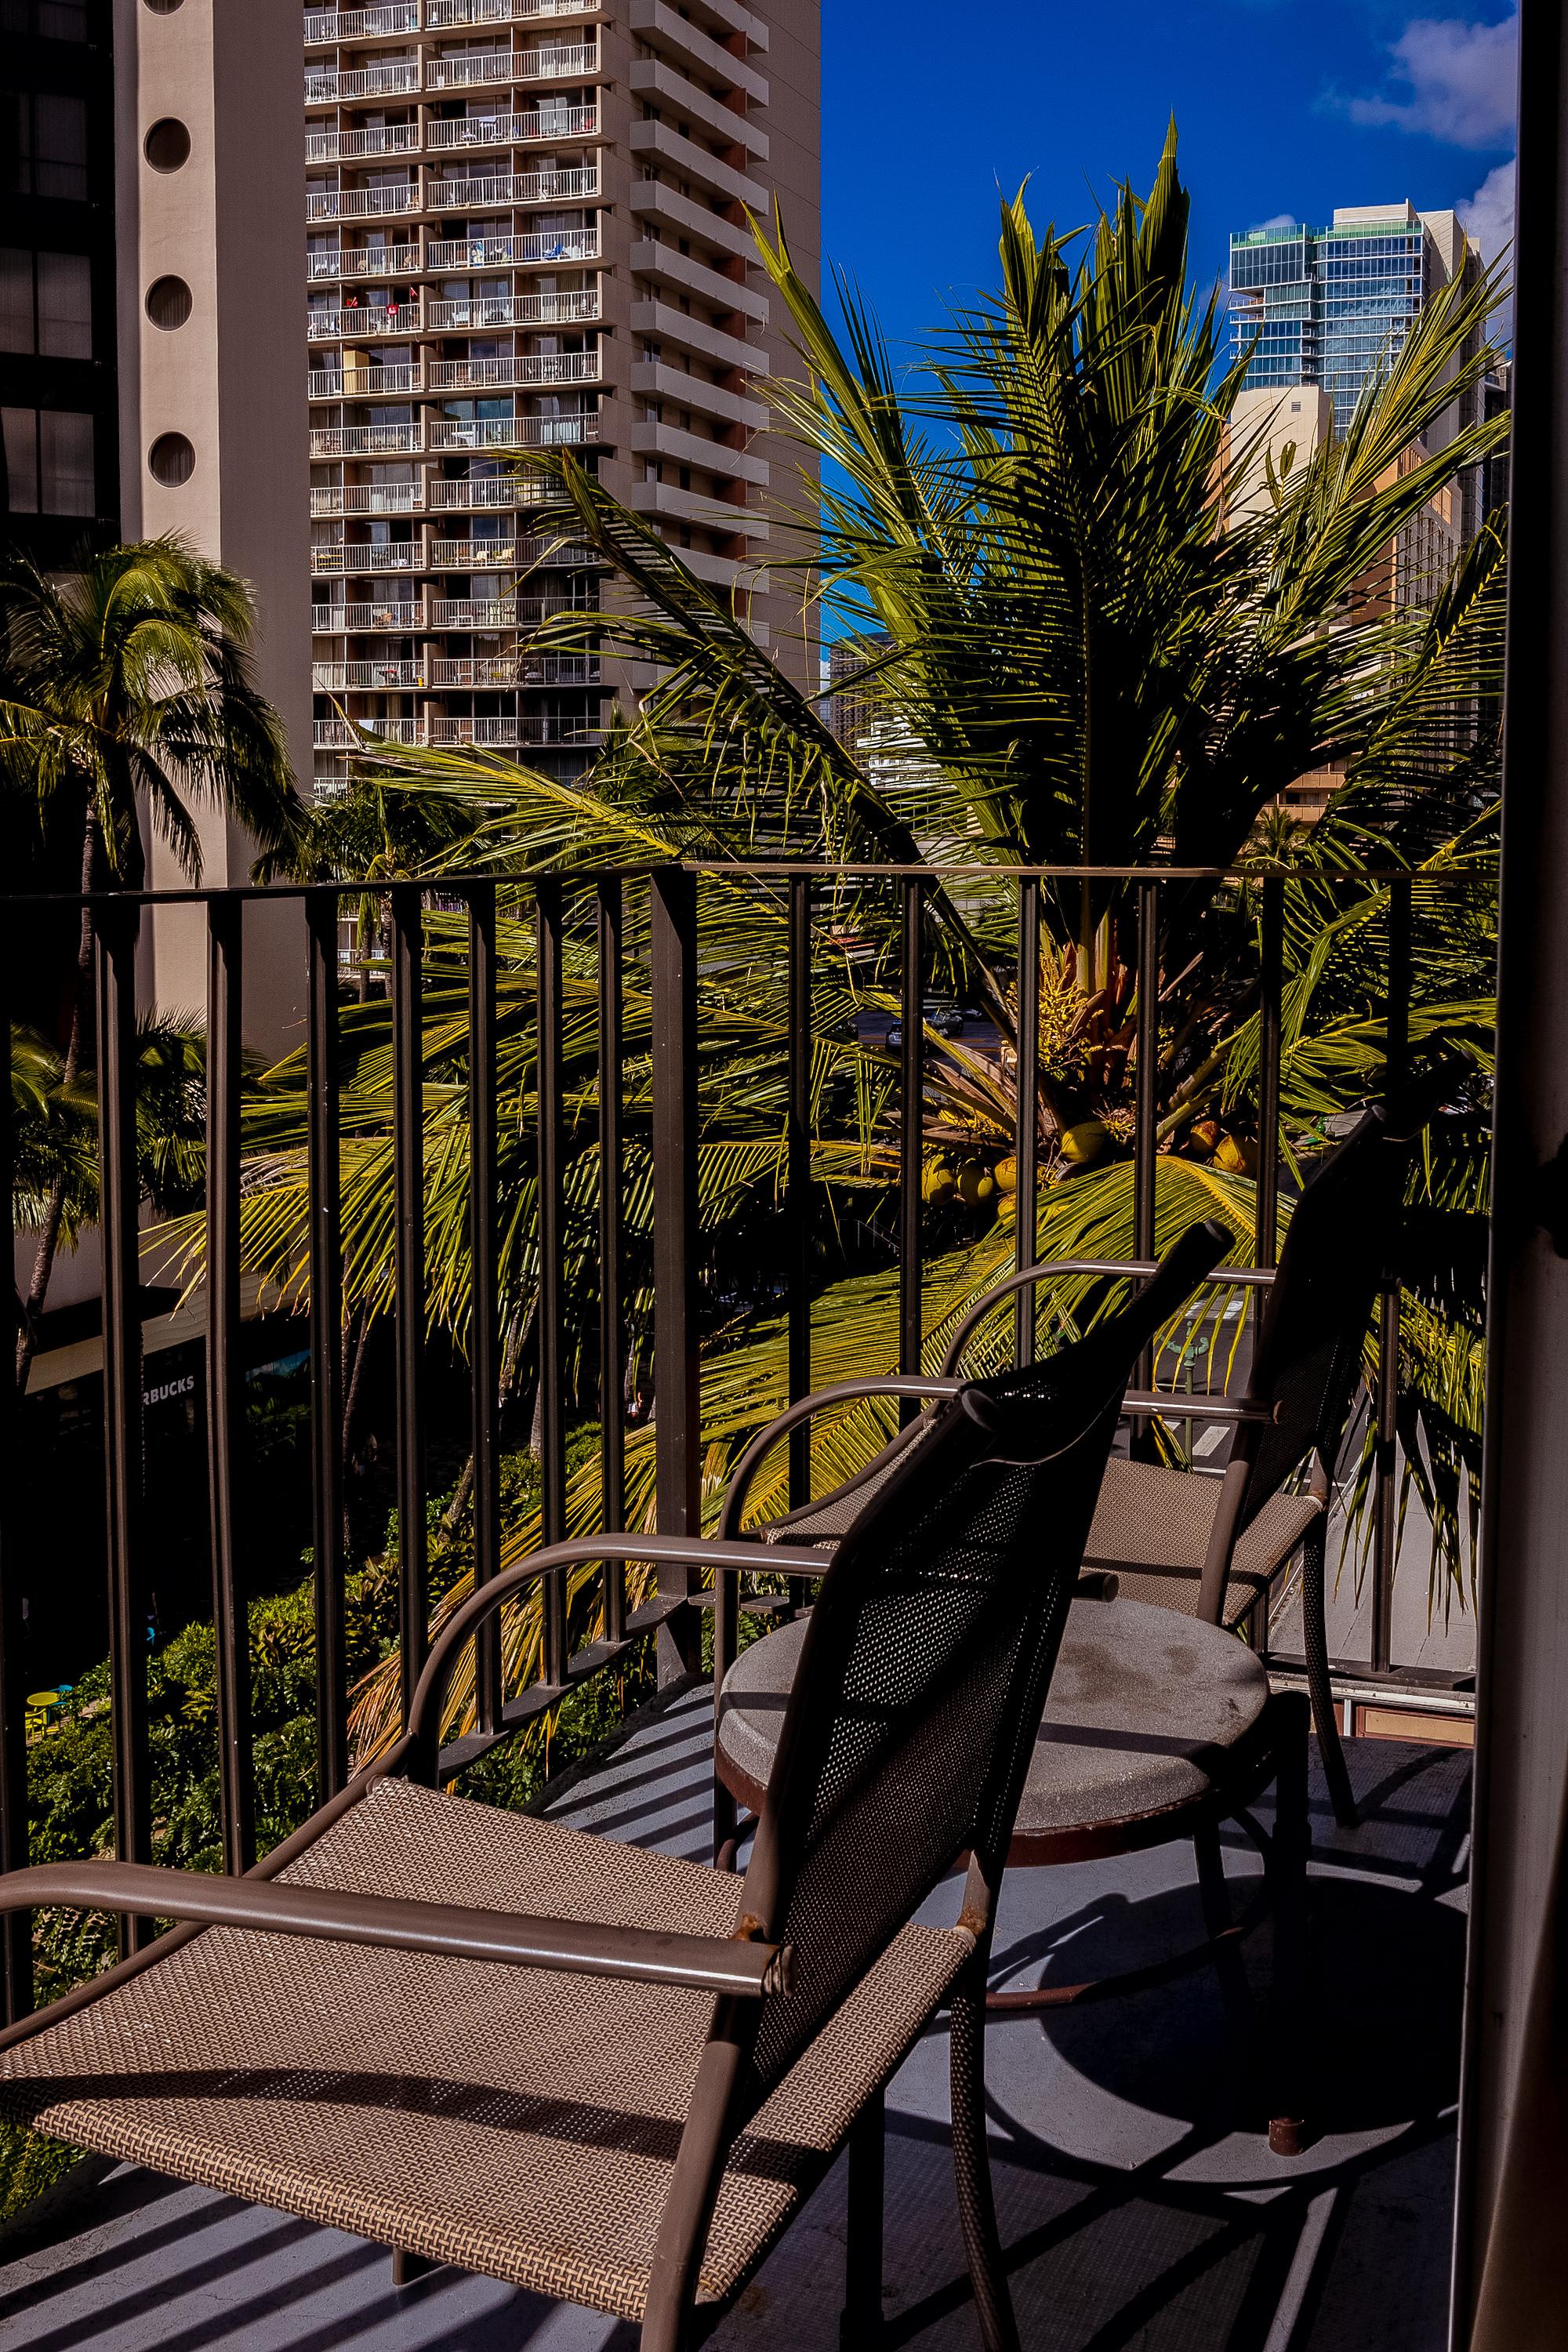 Ohia Waikiki Studio Suites Honolulu Zewnętrze zdjęcie